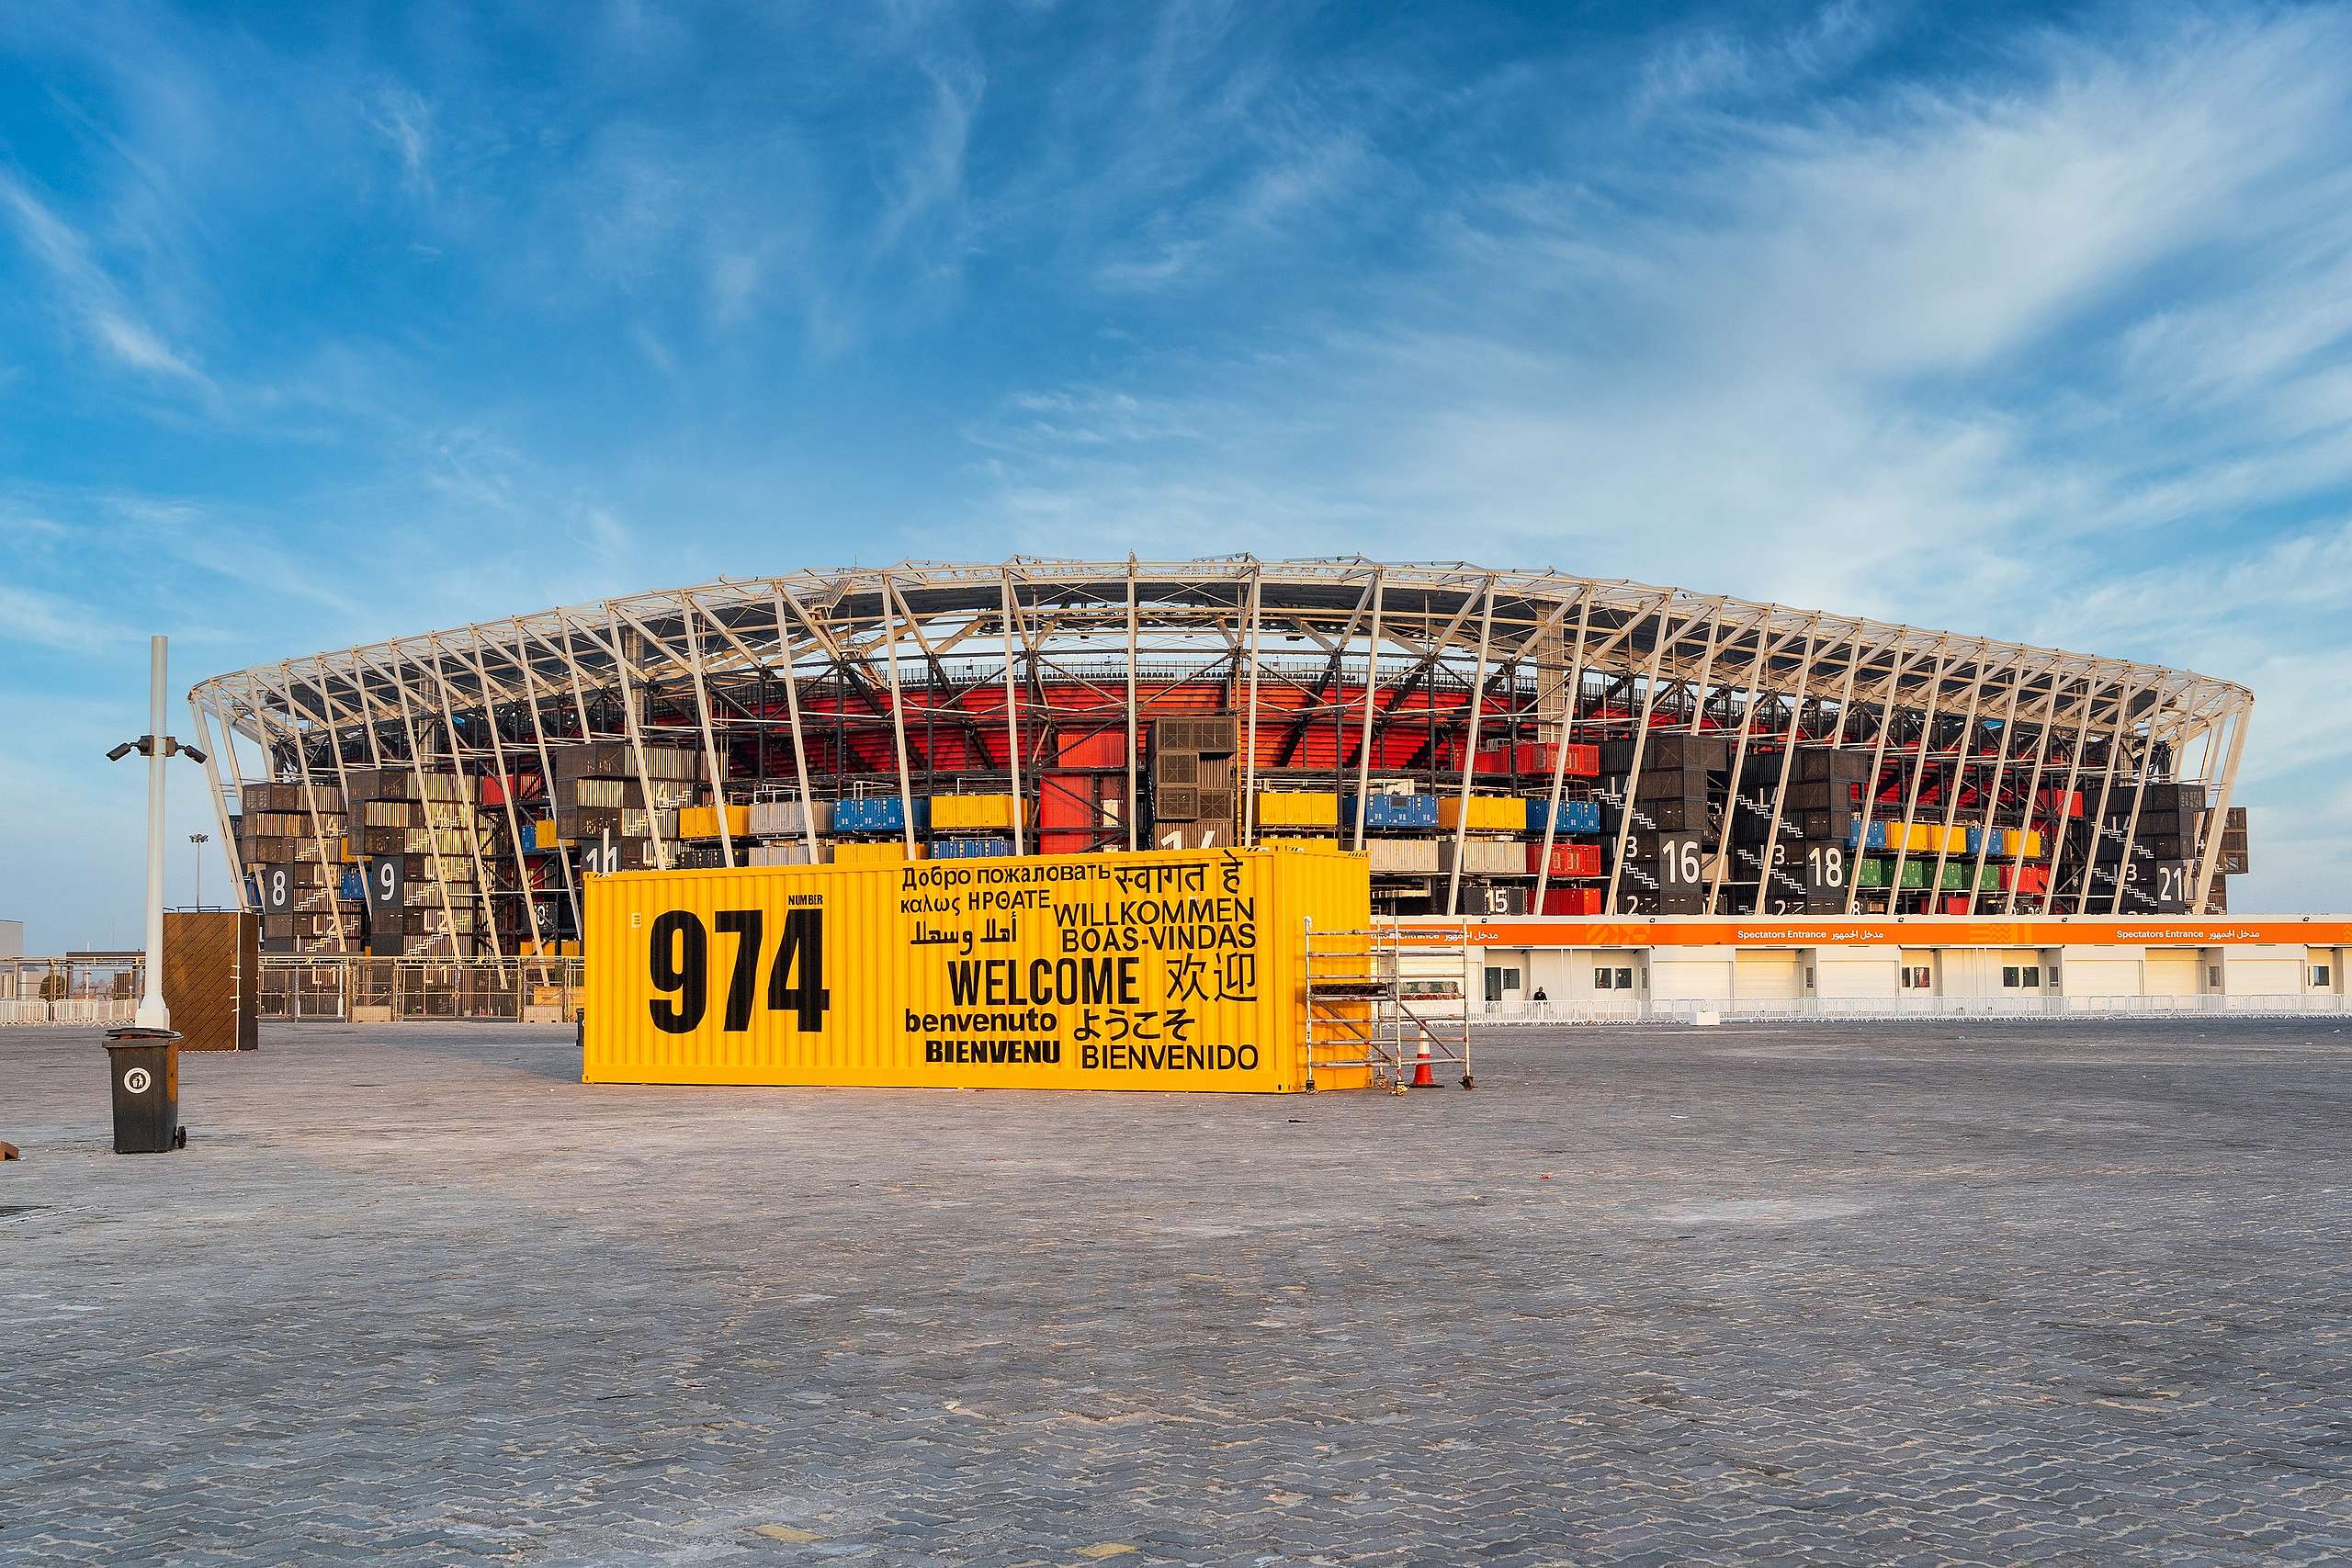 2022世界盃足球賽的體育館之一Stadium 974，是由 974 個回收貨櫃及鋼材搭建而成，屬世界盃歷史上首個「可拆卸」館場，也被視為卡達世盃的環保地標。